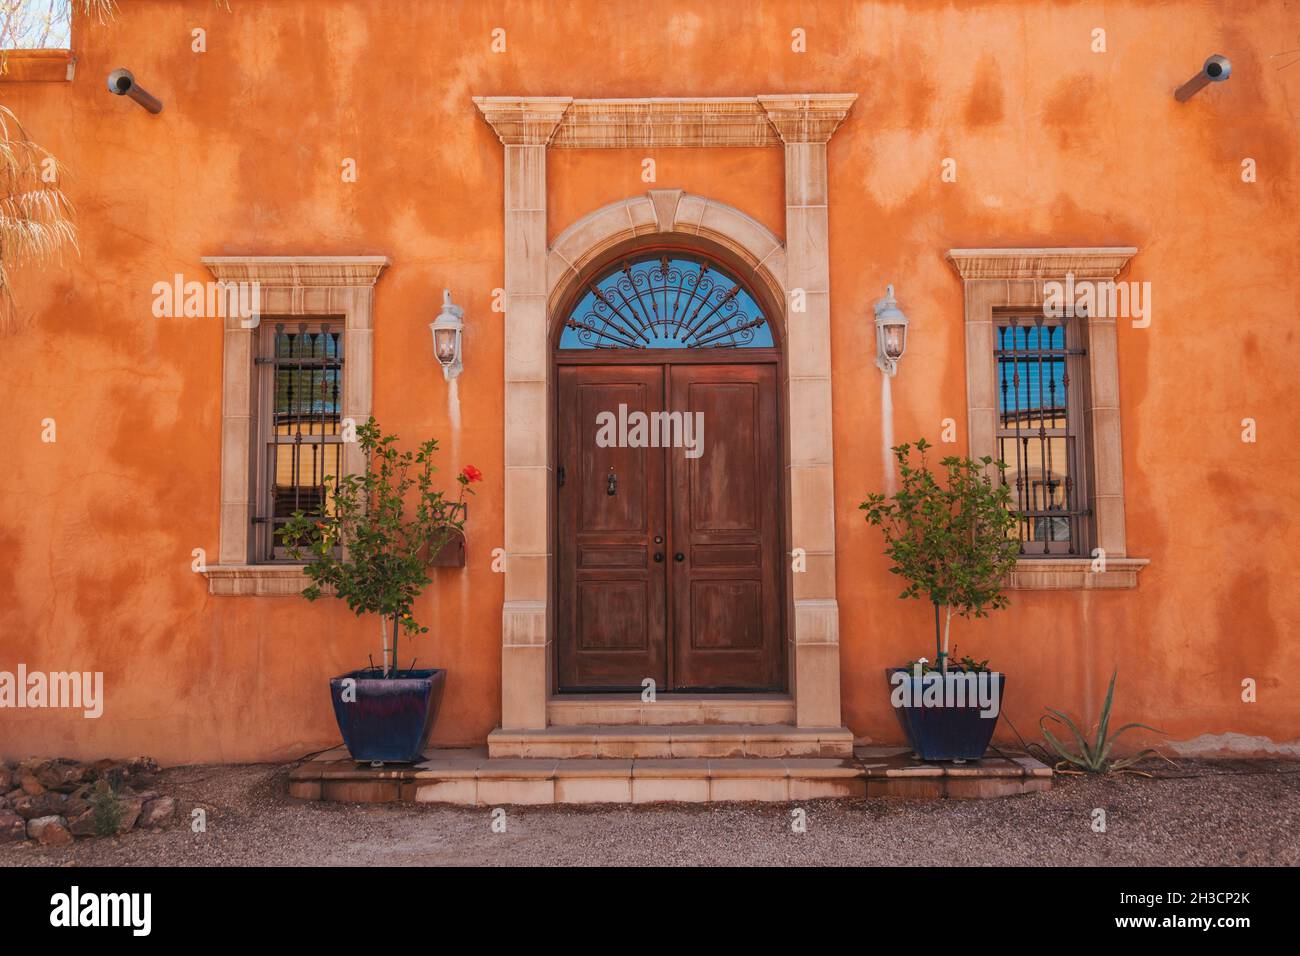 Une maison de style colonial espagnol faite d'adobe et peinte en orange à Barrio Viejo, Tucson, AZ Banque D'Images